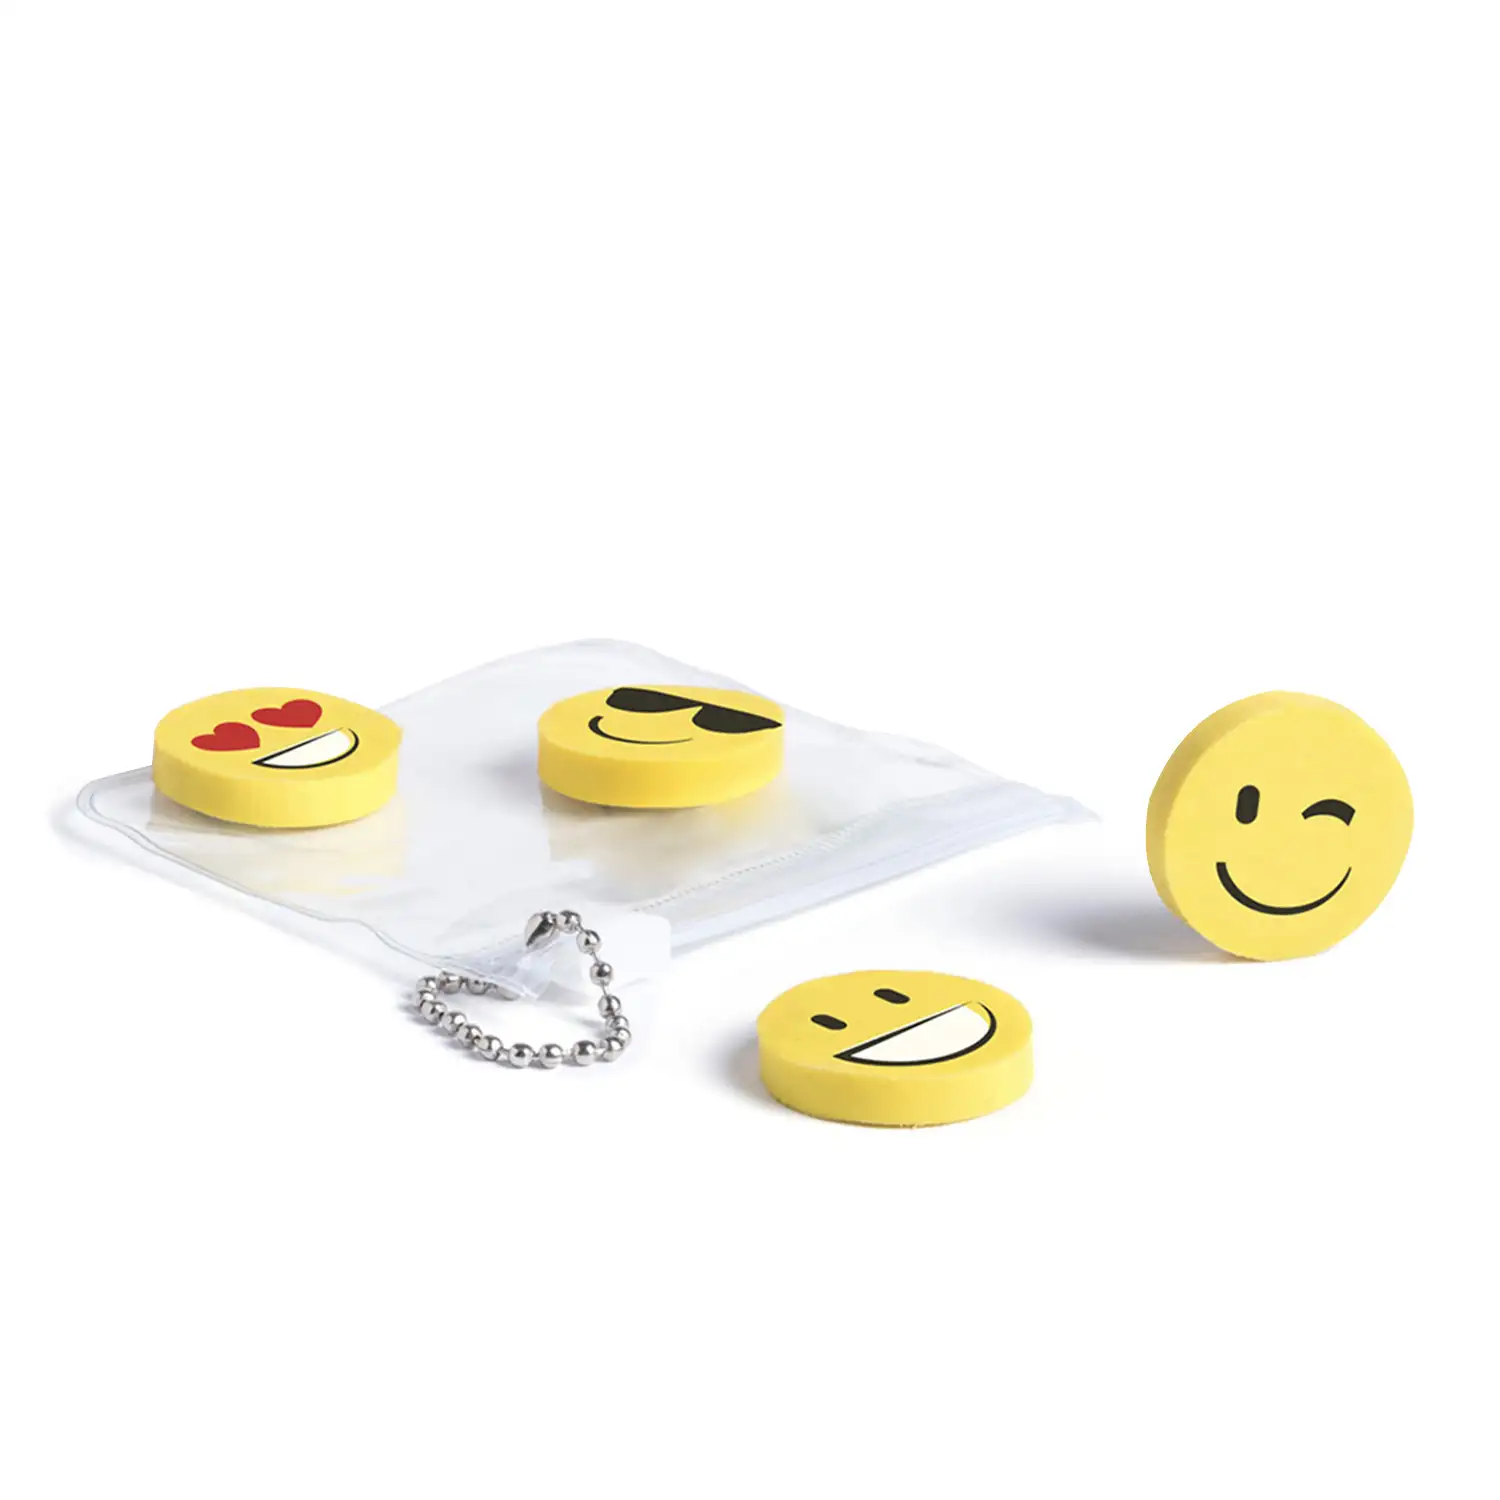 Mateky, set de 4 gomas diseños emoji con estuche con cierre zippery cadenita de transporte.